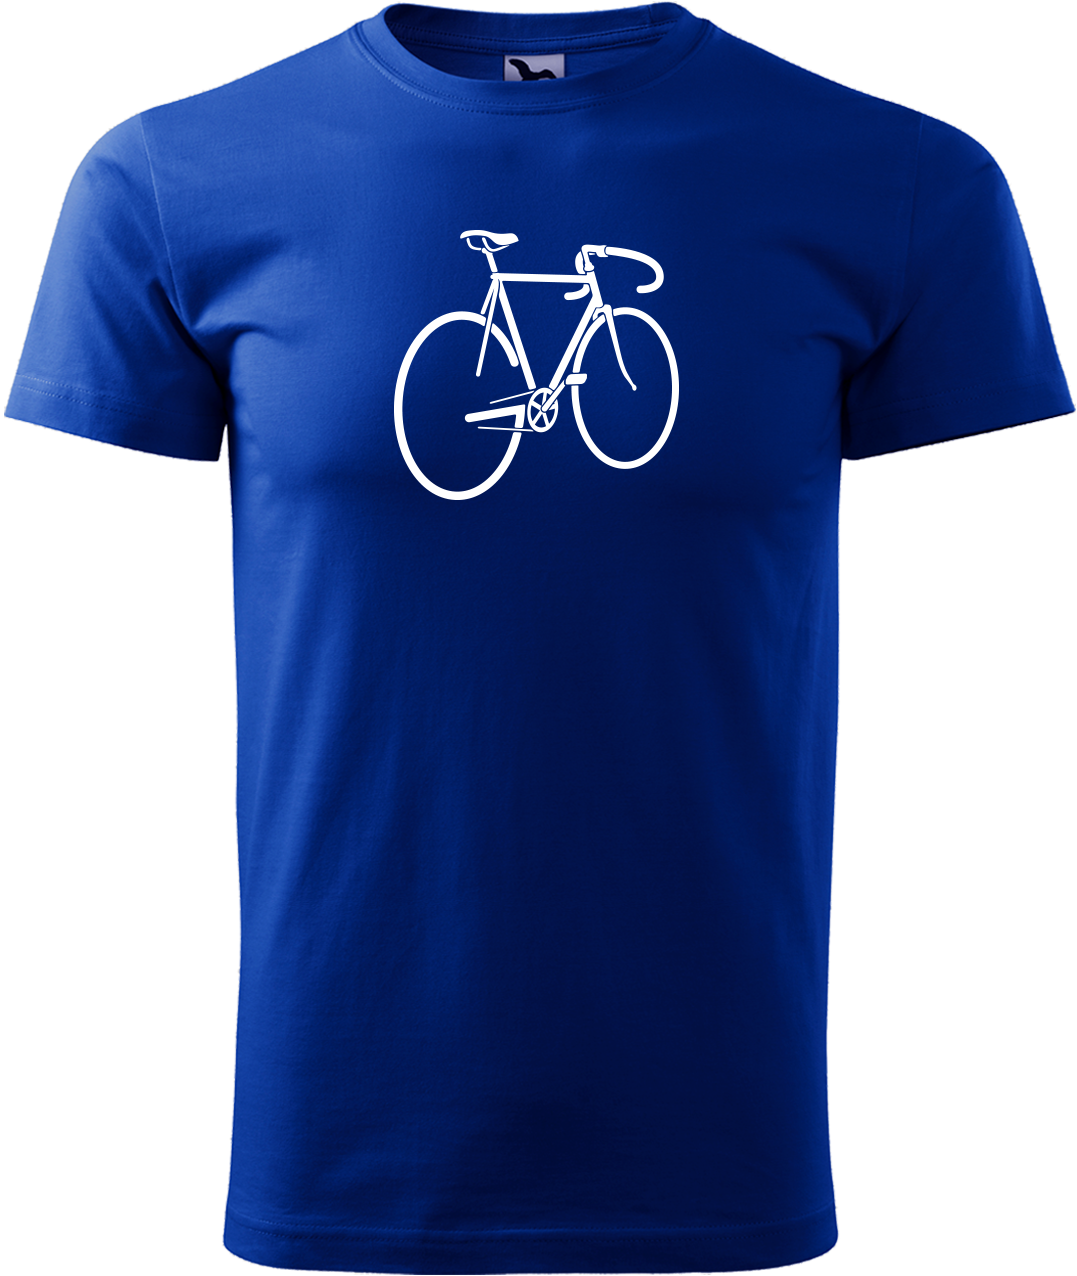 Pánské tričko s kolem - Pánské kolo Velikost: XL, Barva: Královská modrá (05)